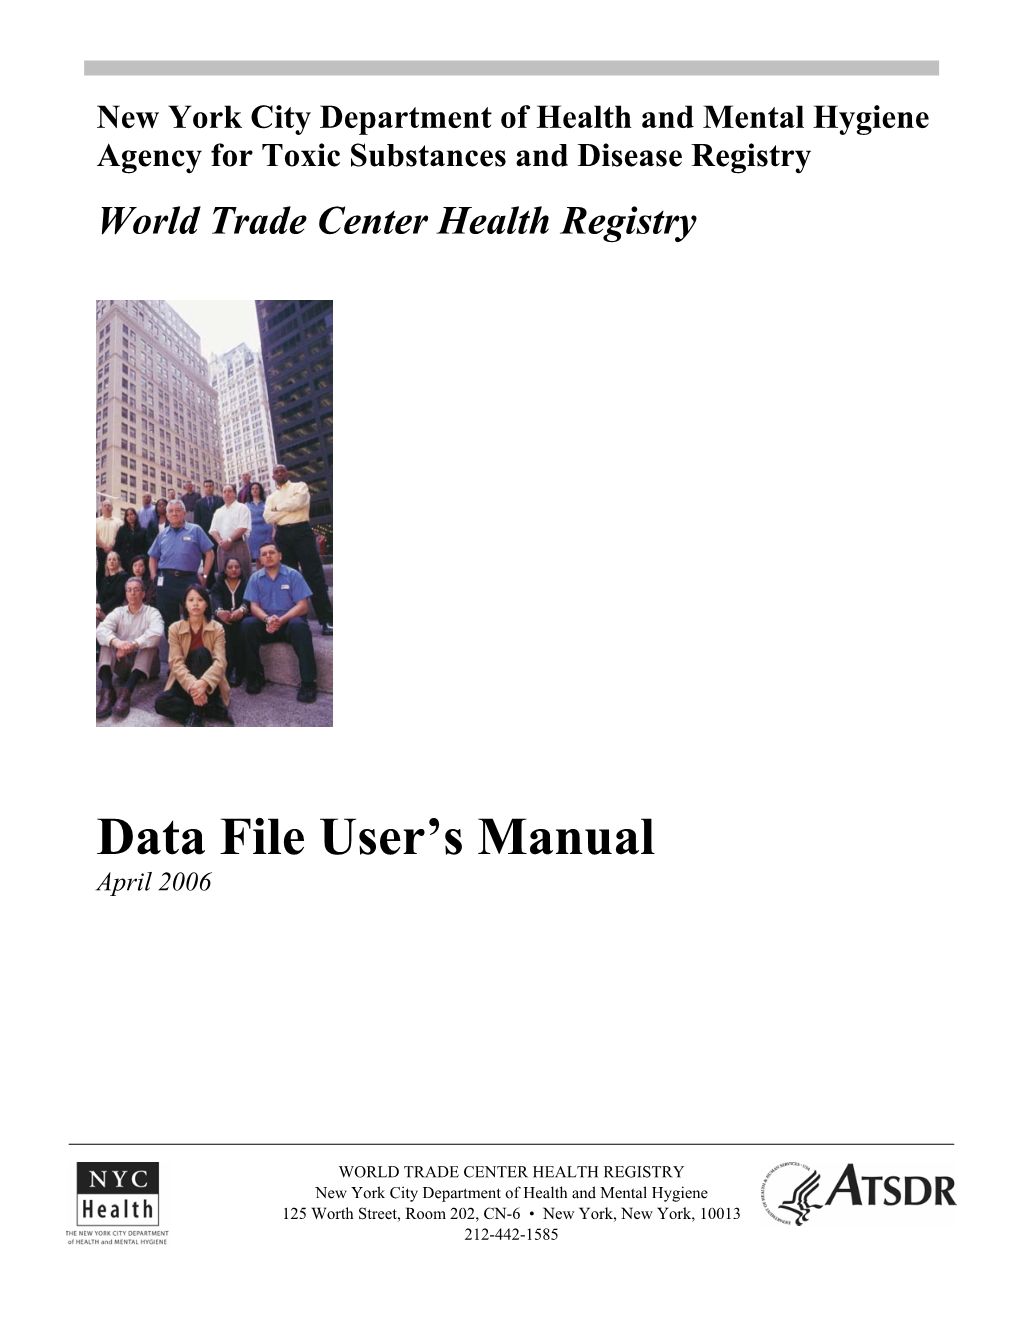 Data File User's Manual